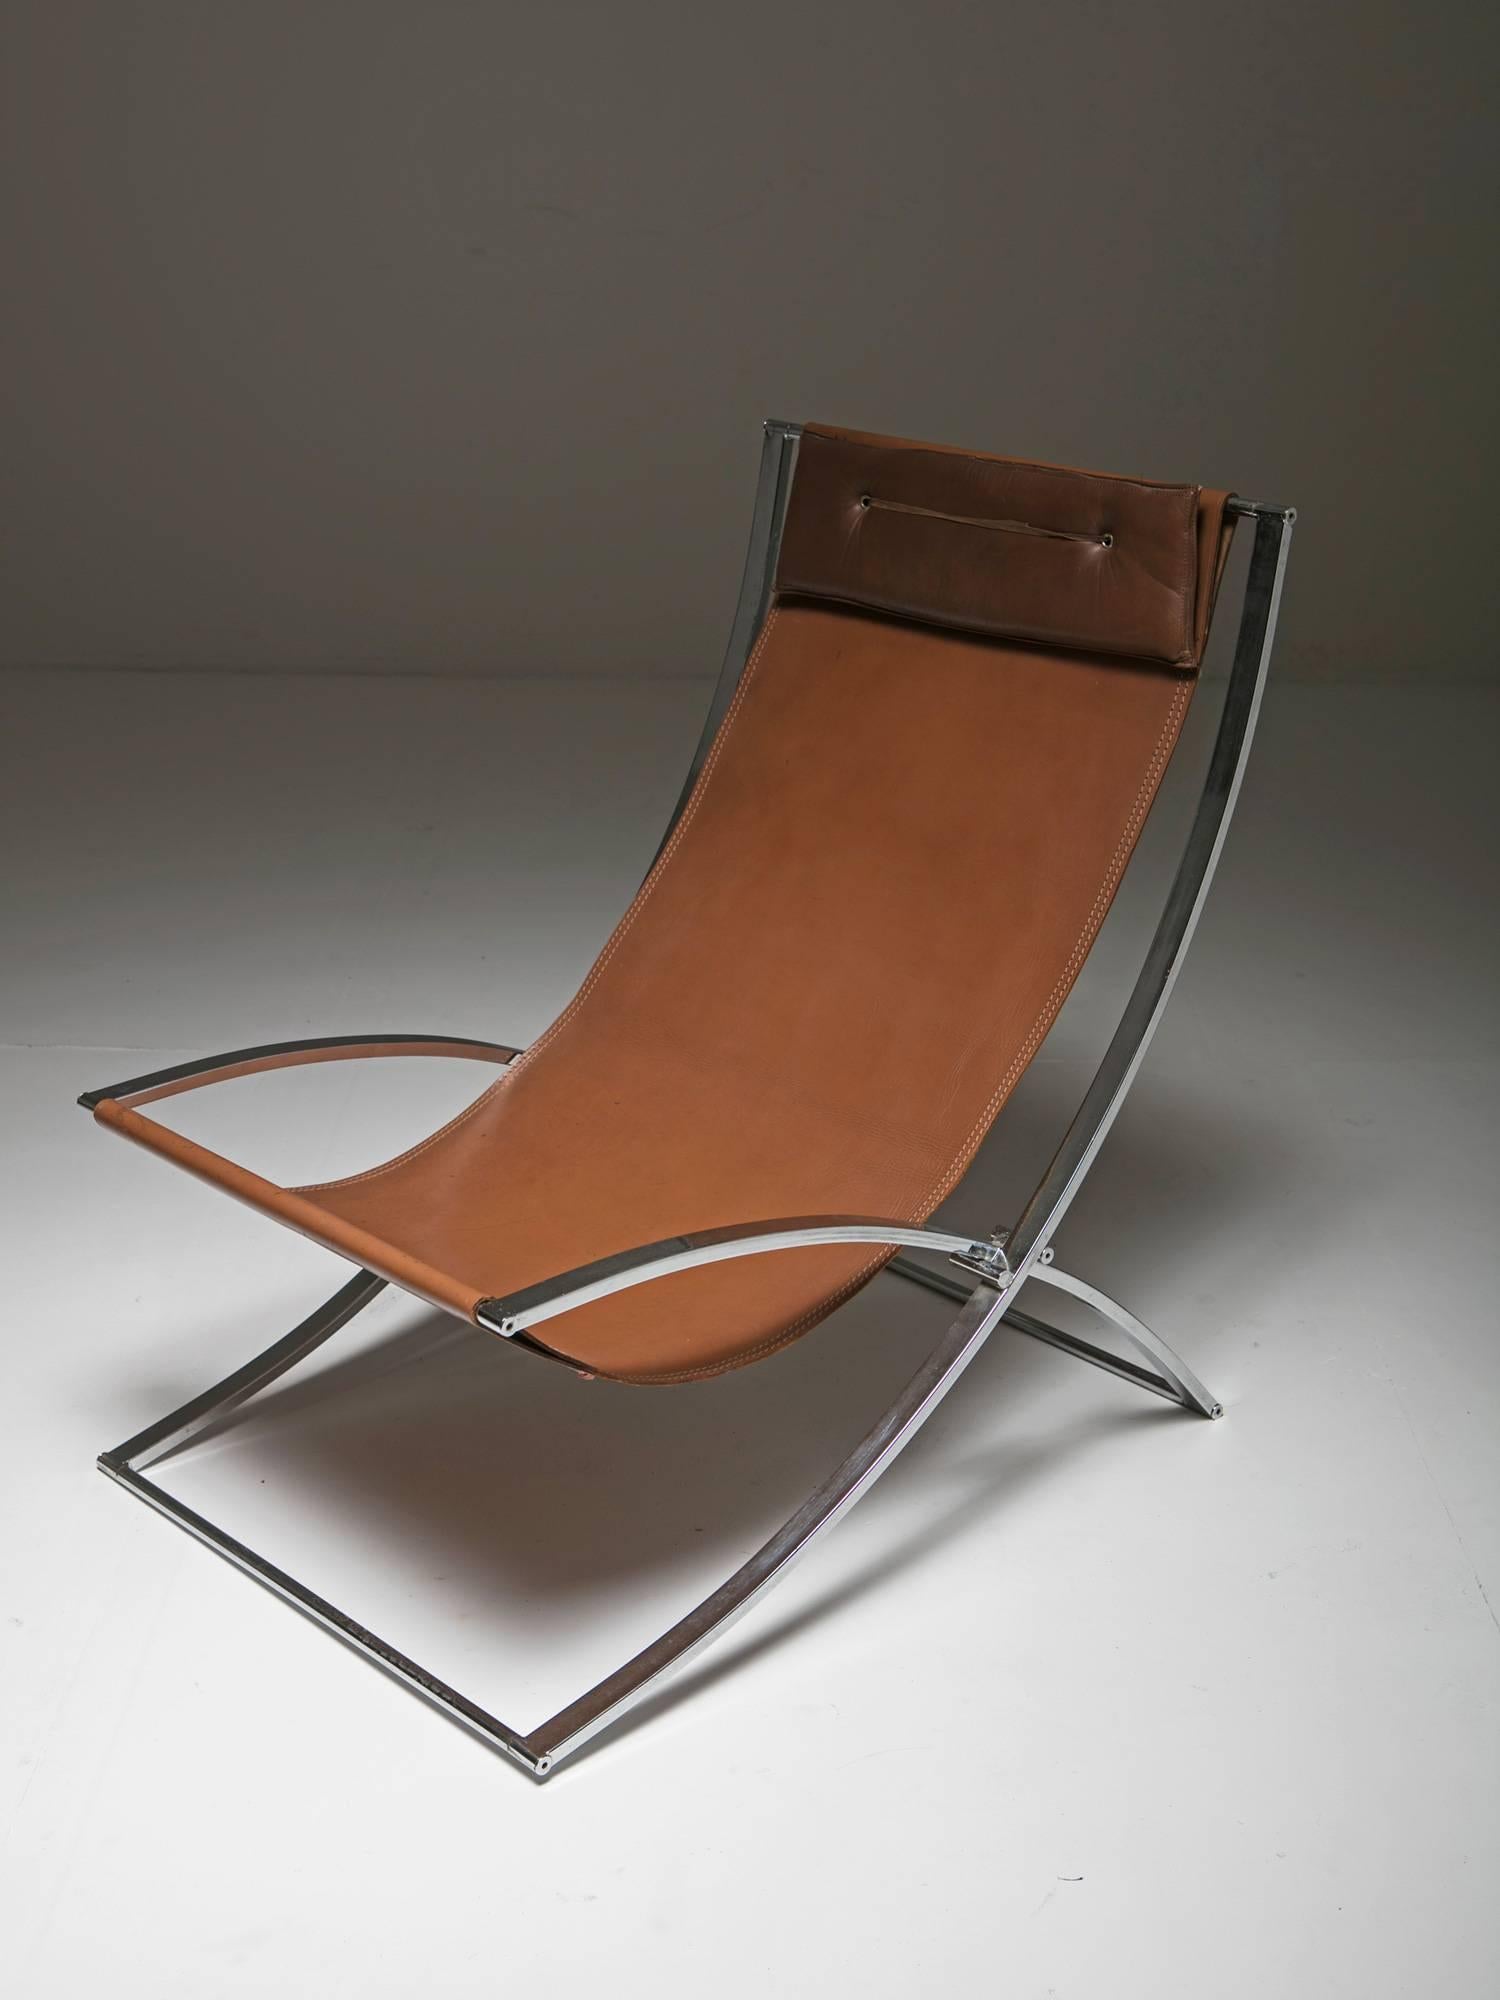 Set aus zwei klappbaren Sesseln von Marcello Cuneo für Mobel.
Elegantes Chromgestell und Lederpolsterung mit kompaktem Kopfteilkissen.